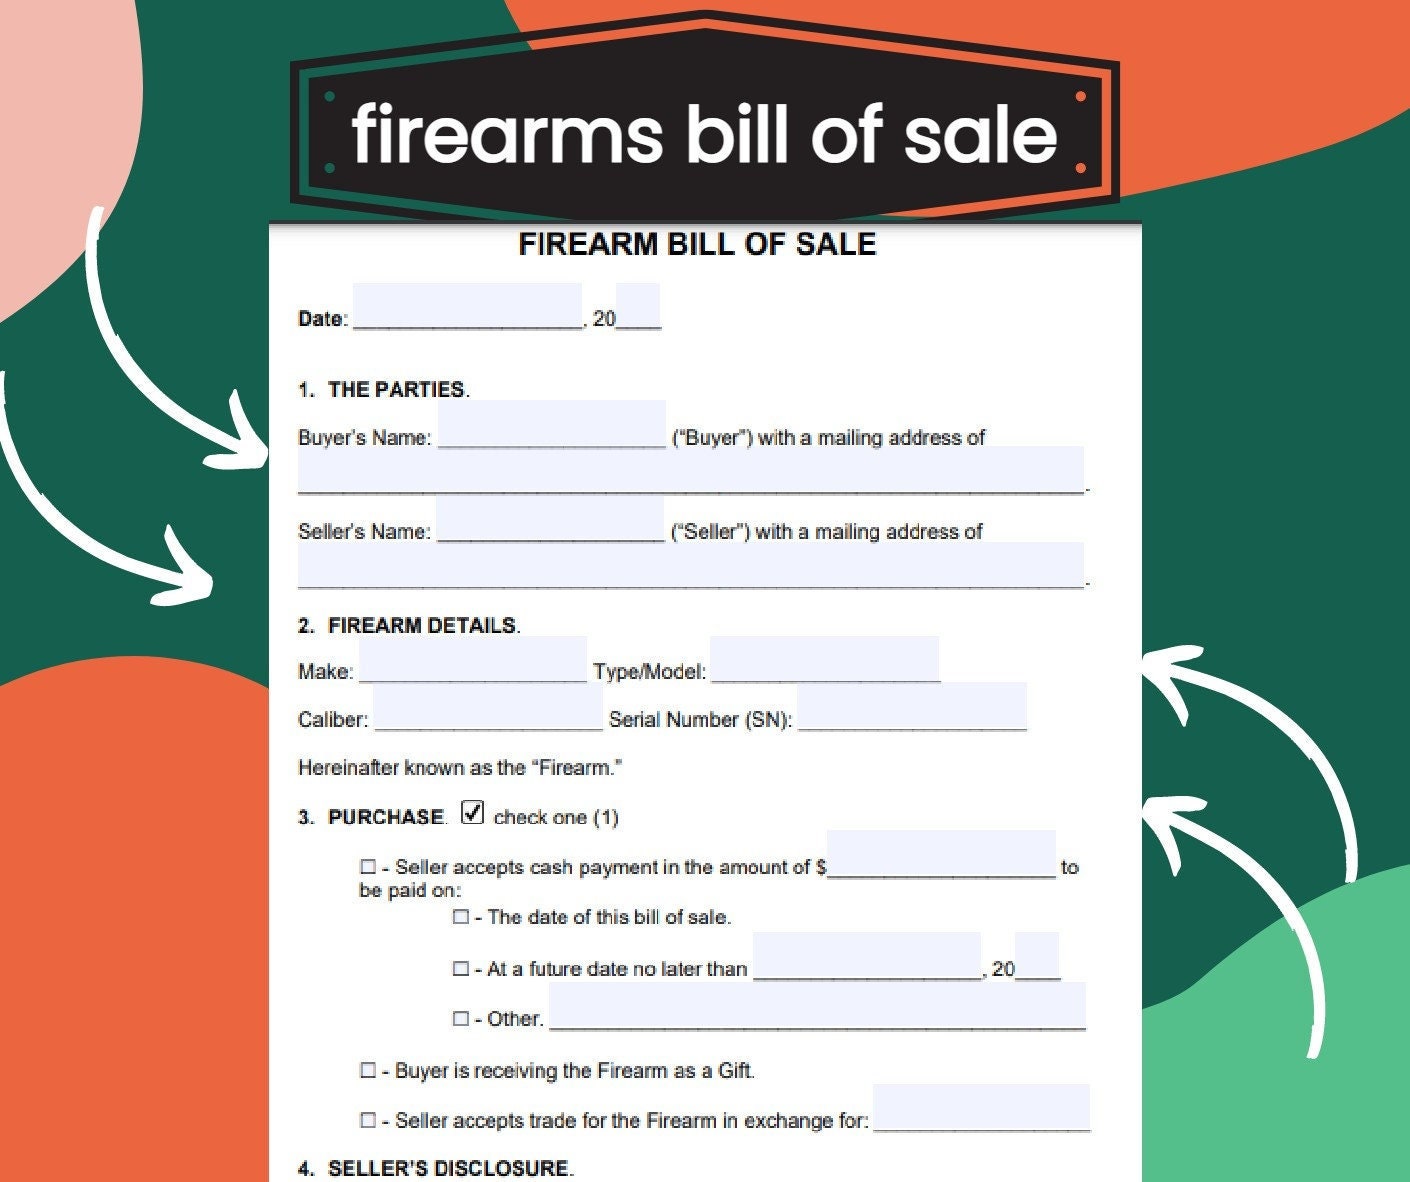 firearm-gun-bill-of-sale-form-firearms-bill-of-sale-etsy-india